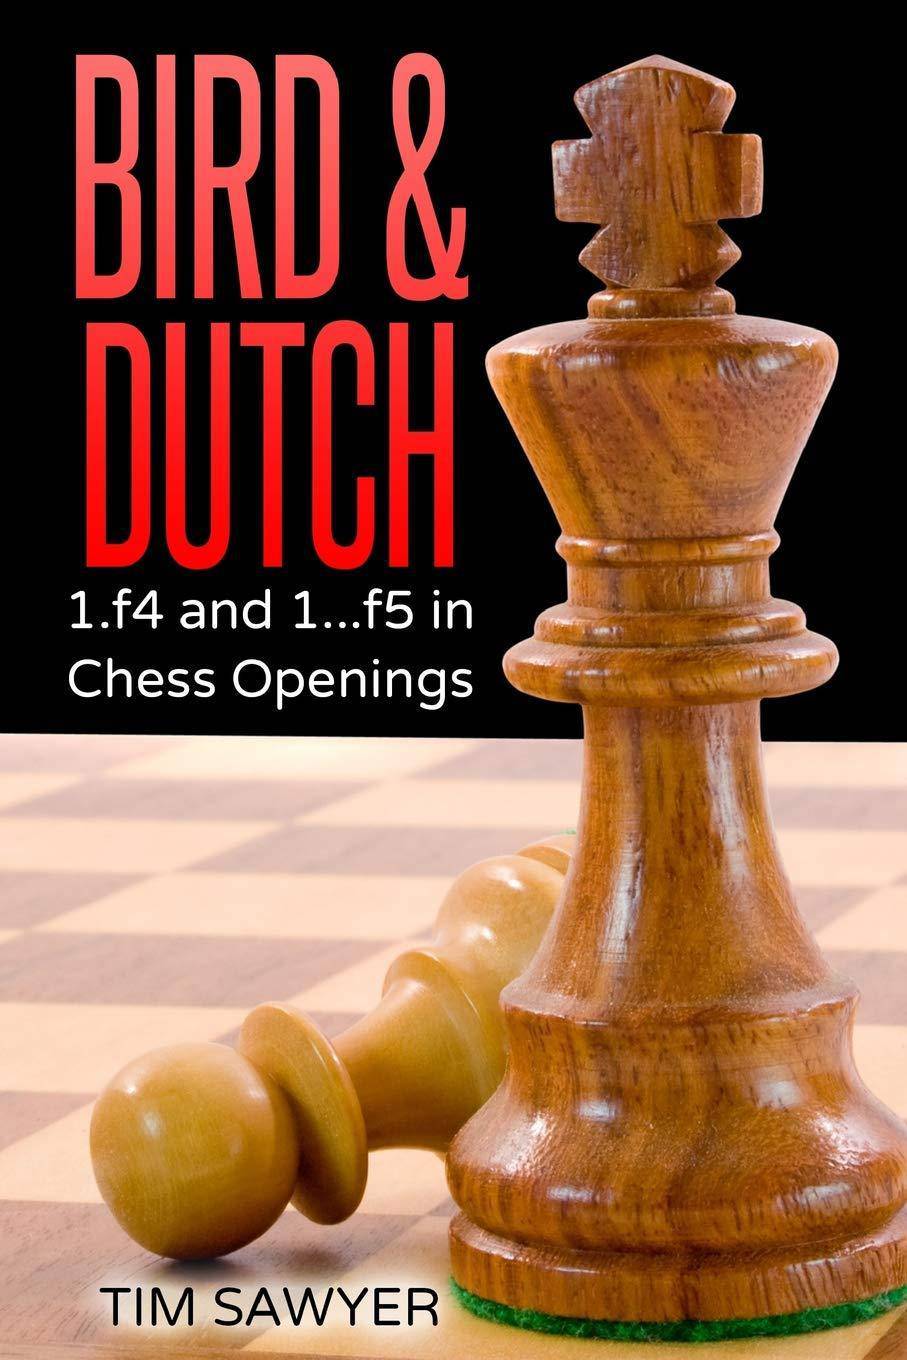 Chess openings - Books